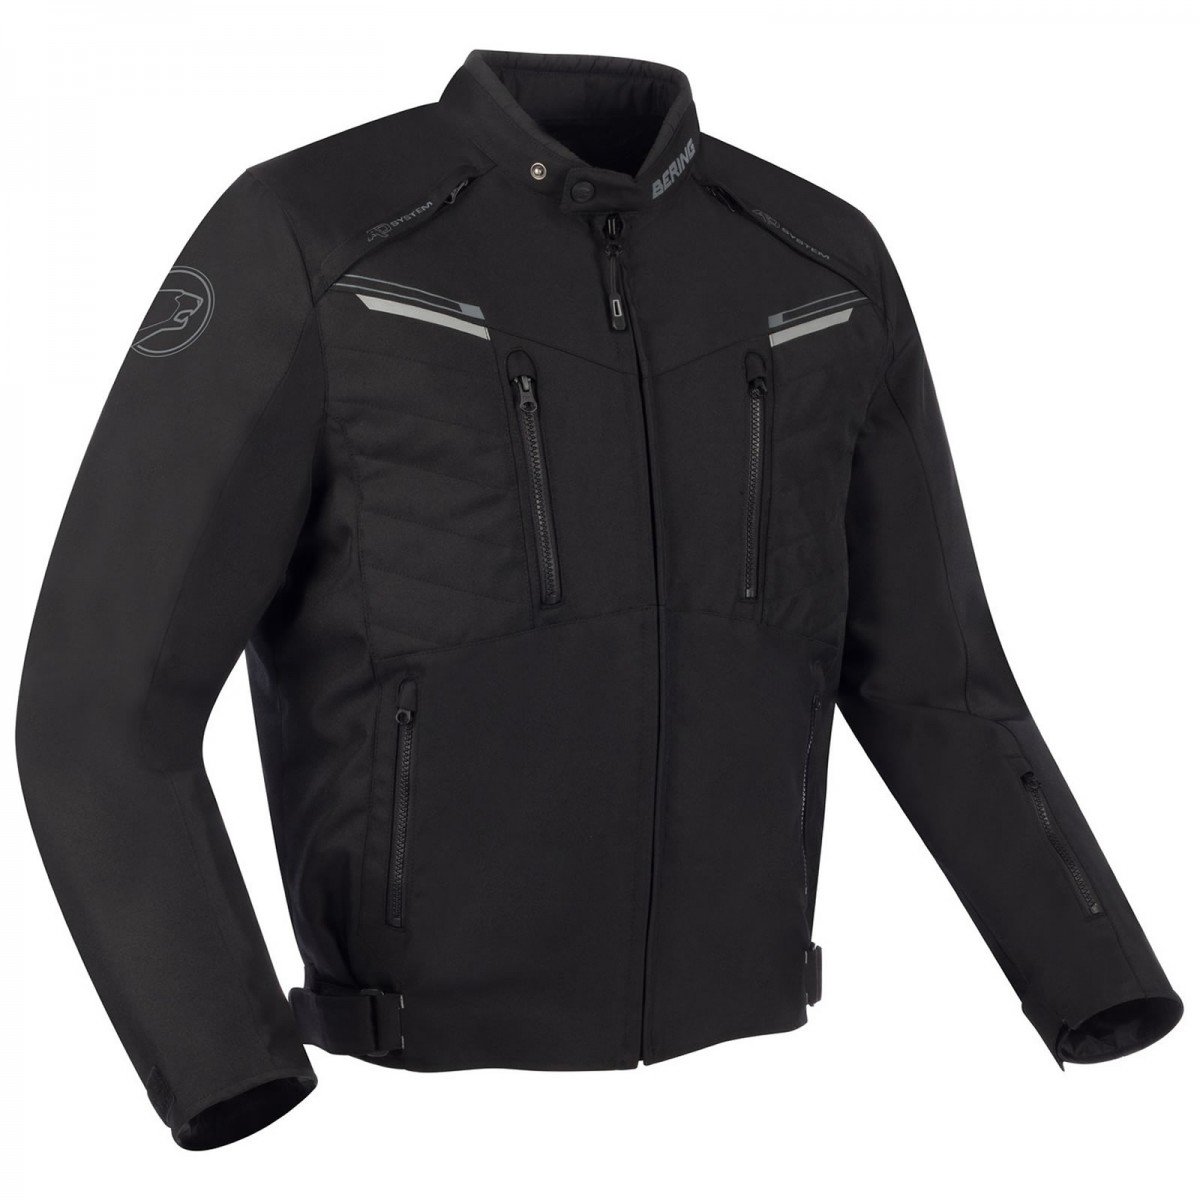 Image of Bering Otago Jacket Black Size M ID 3660815161654